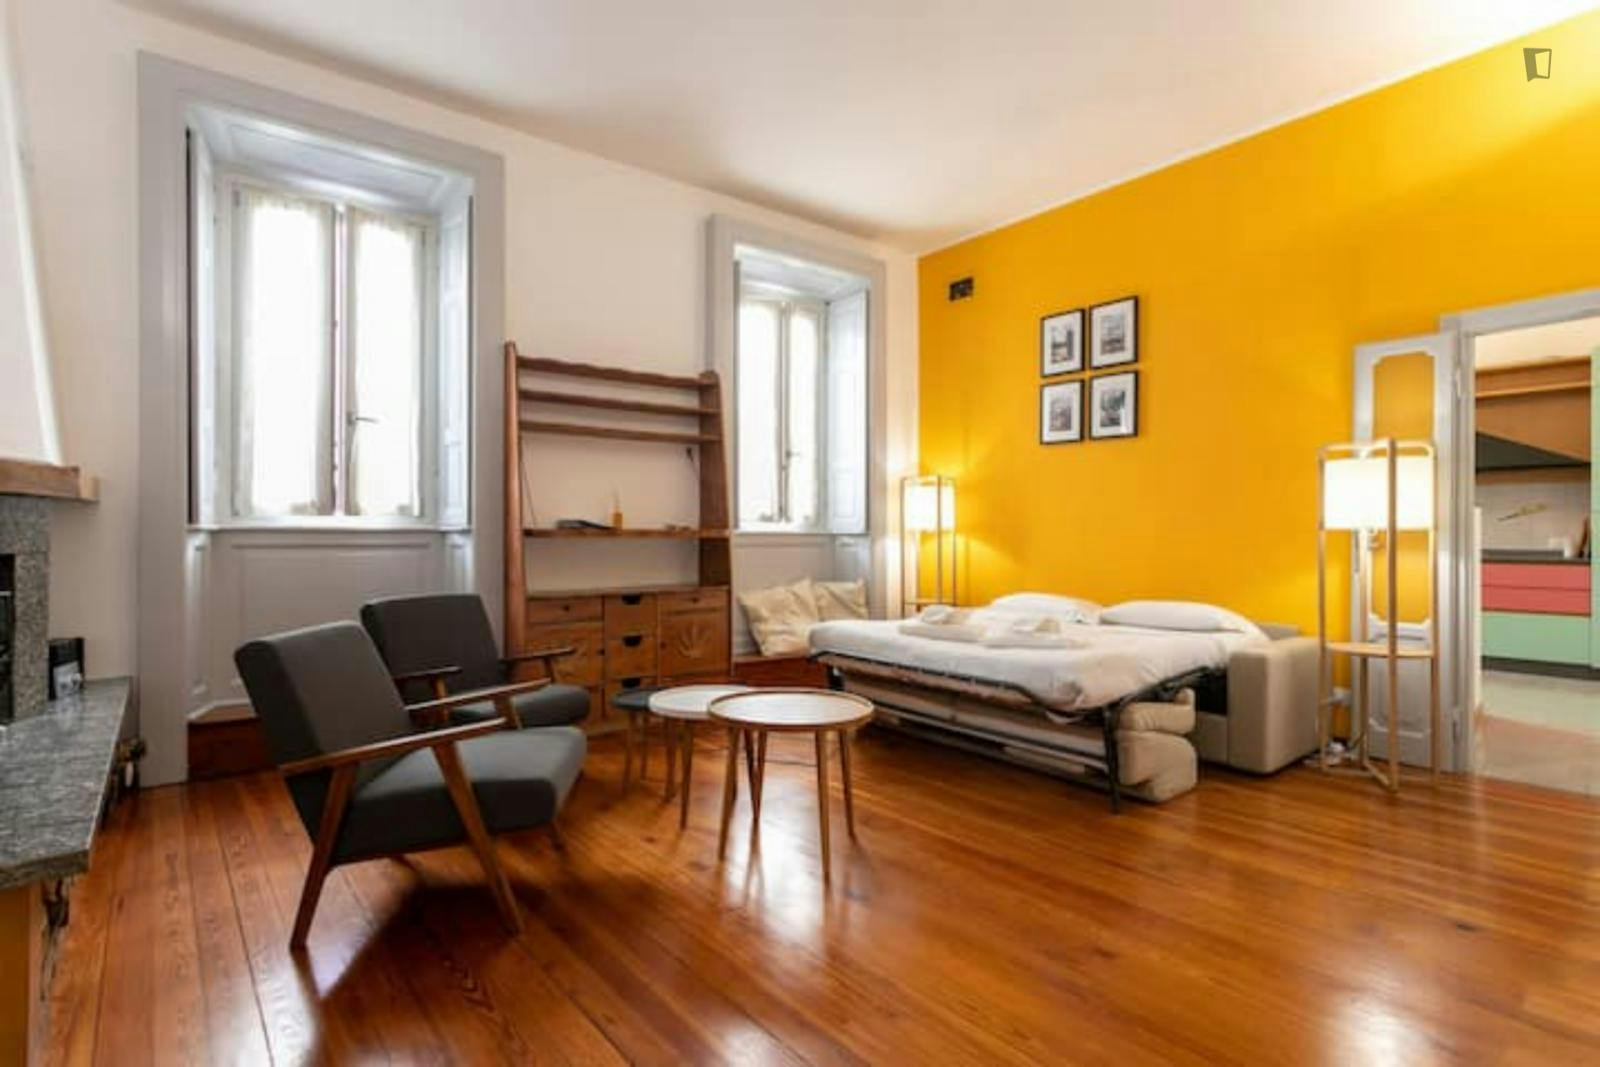 Excellent 2-bedroom in the heart of Monza